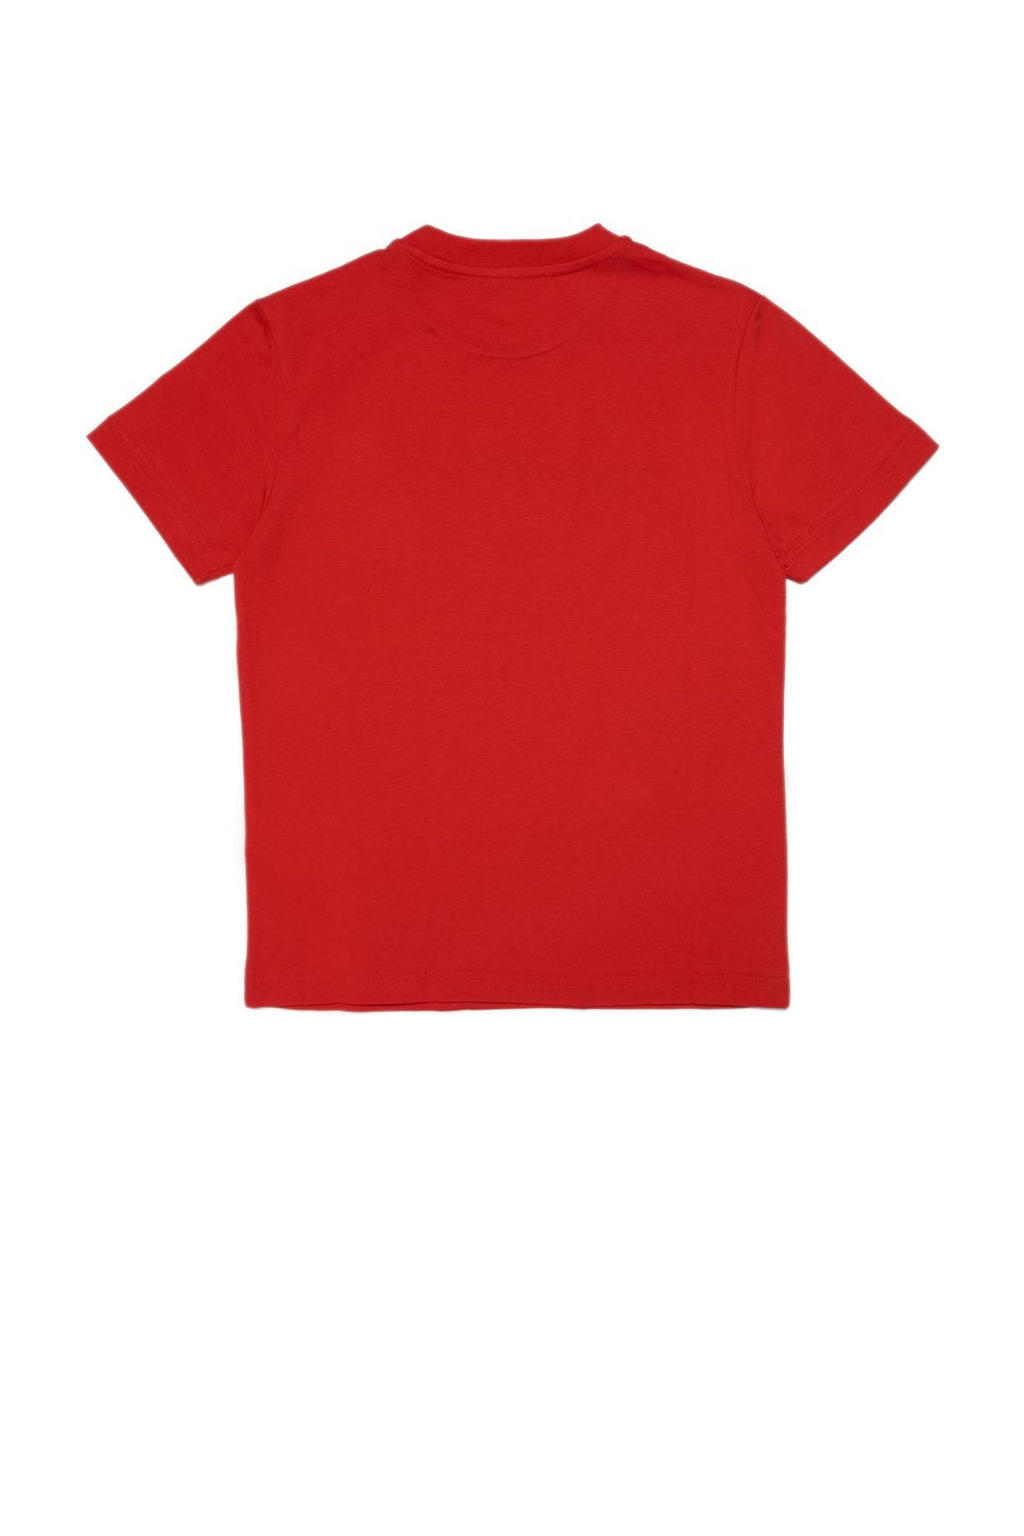 Rode jongens Diesel T-shirt van katoen met logo dessin, korte mouwen en ronde hals